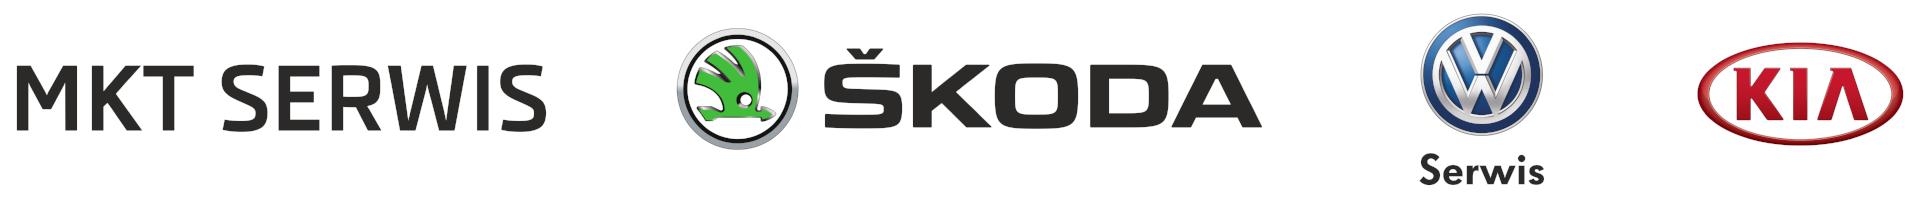 MKT Swerwis - autosalon, serwis Skoda, VW, KIA